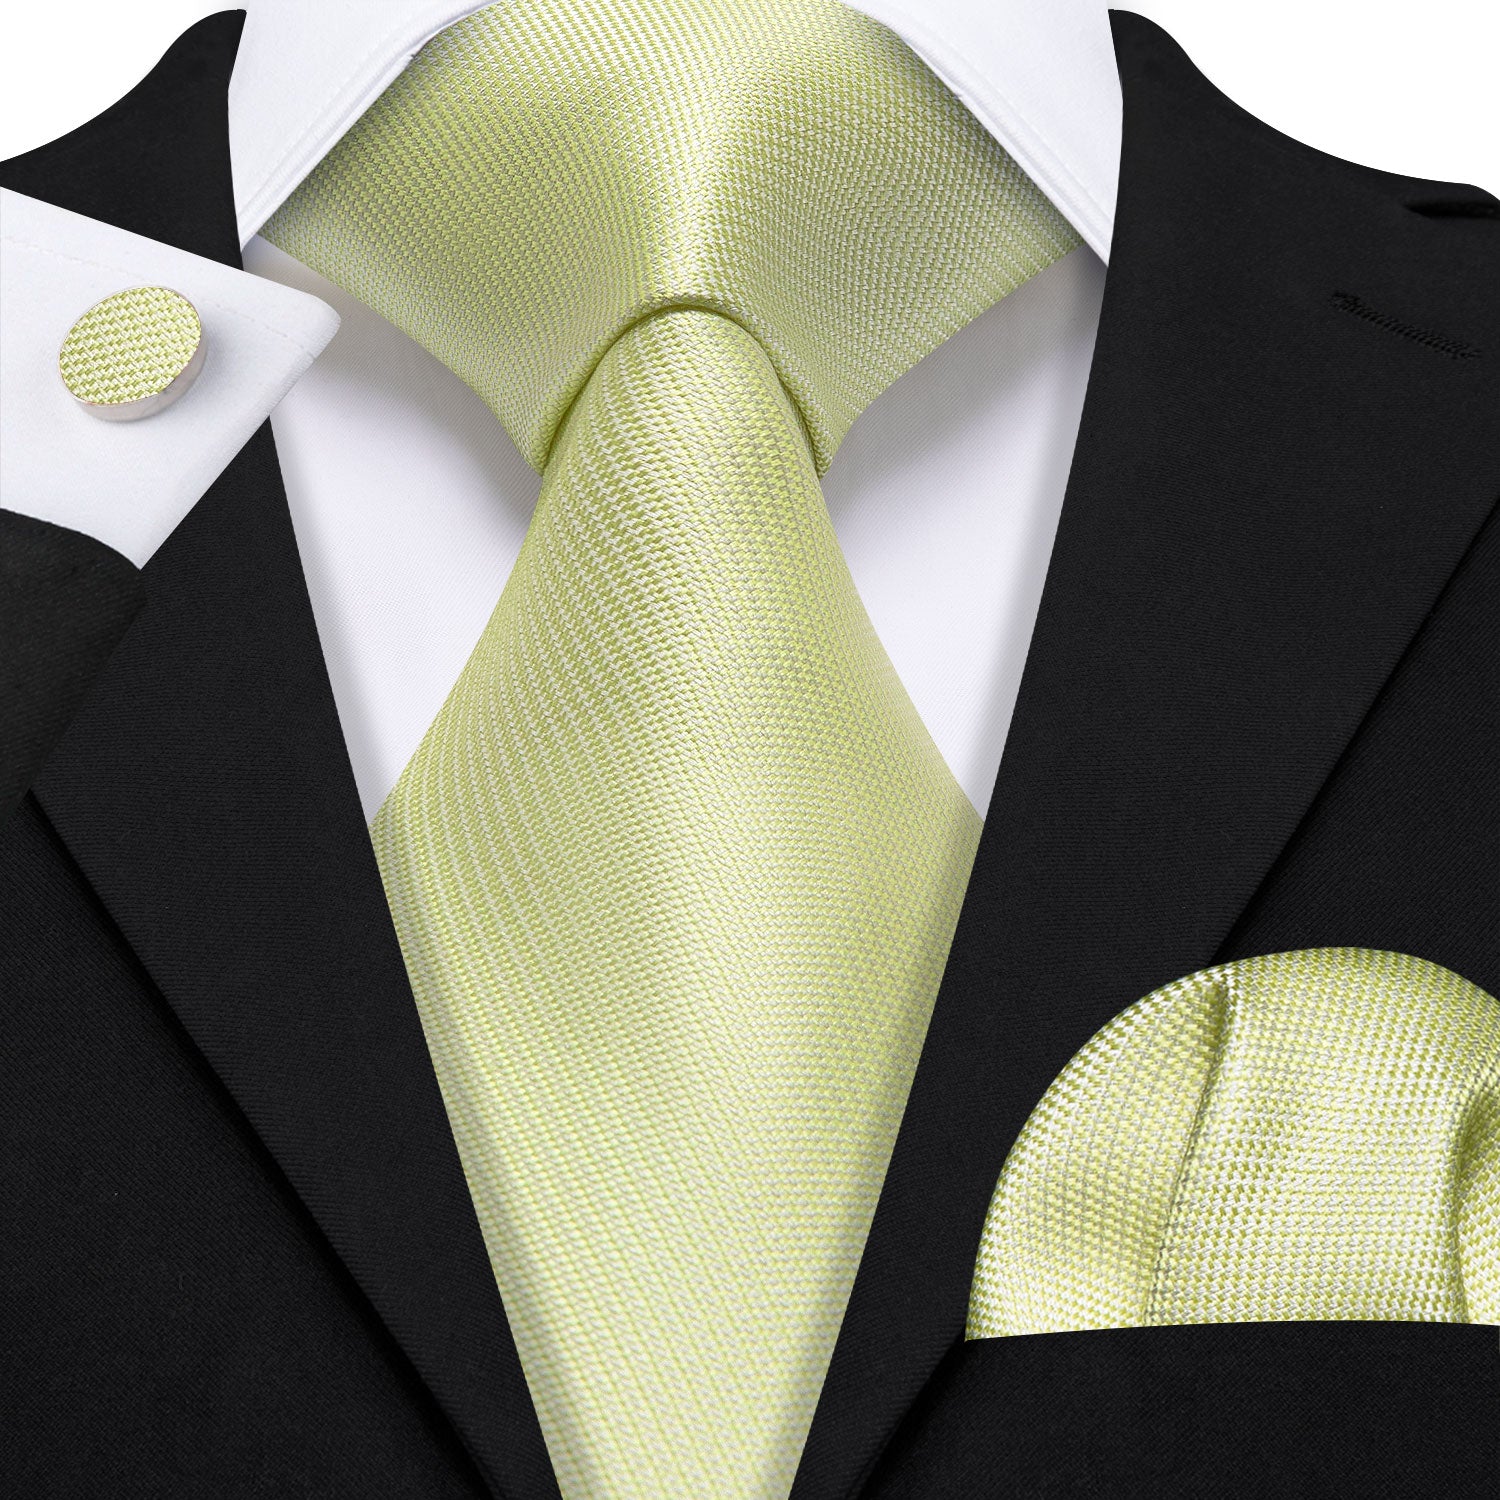 Mist Green Solid Silk Tie Handkerchief Cufflinks Set